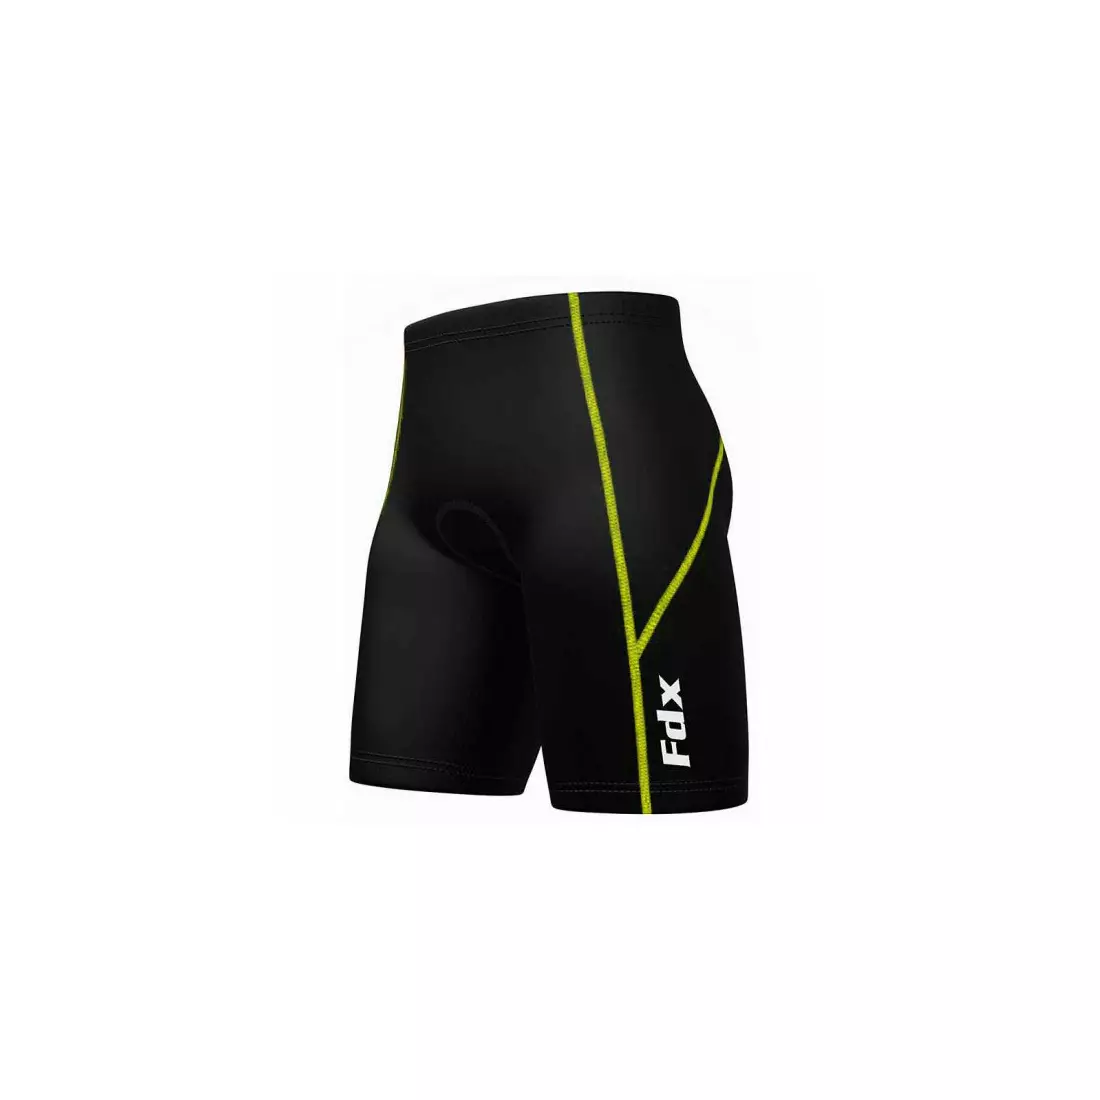 Pantaloni scurți pentru ciclism bărbați FDX 1600, negru - cusătură fluor